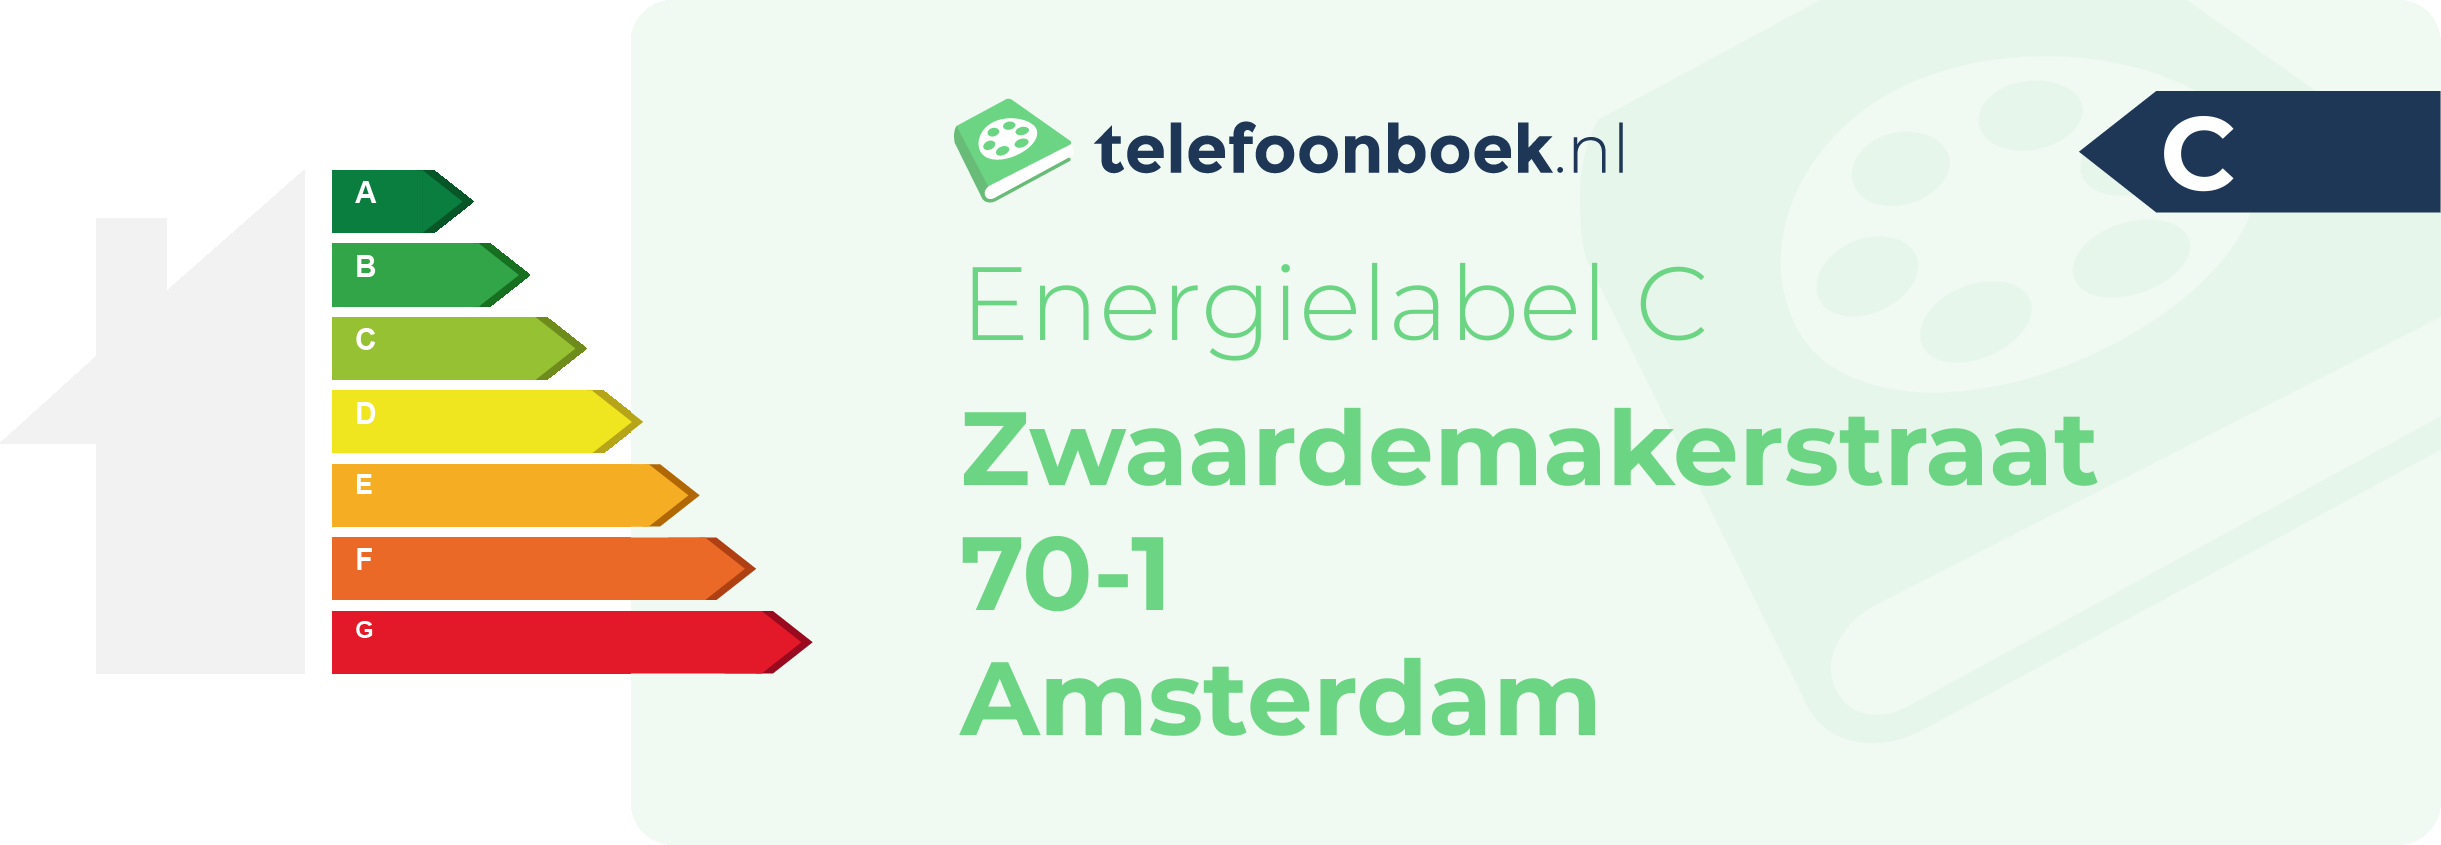 Energielabel Zwaardemakerstraat 70-1 Amsterdam